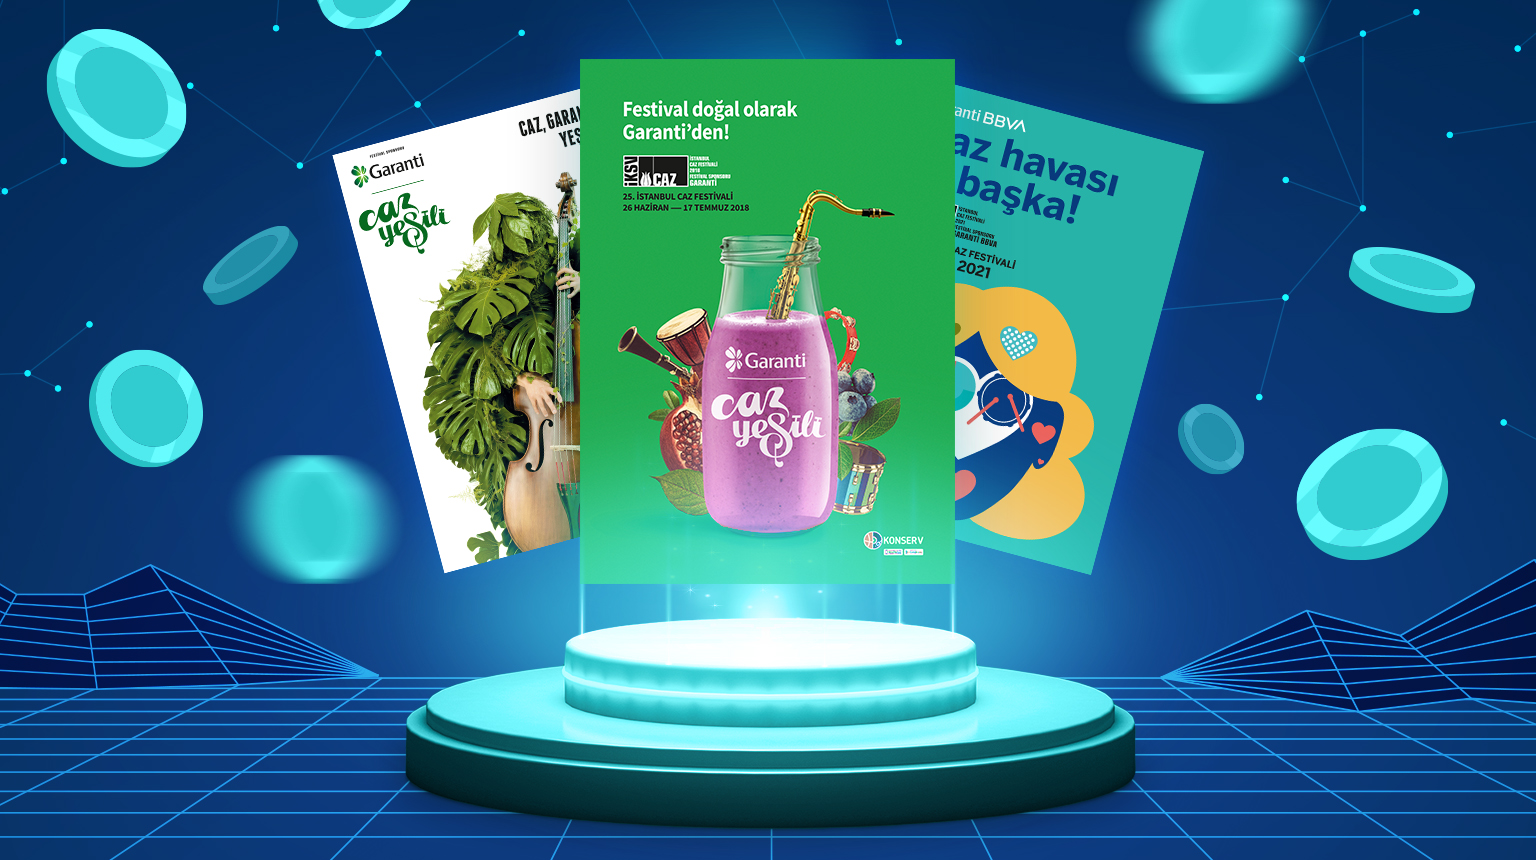 İstanbul Caz Festivali’nin 25. yılında, ikonik festival afişlerinden oluşan 25 parçalık NFT Koleksiyonu’nu müşterilerimize hediye ediyoruz.